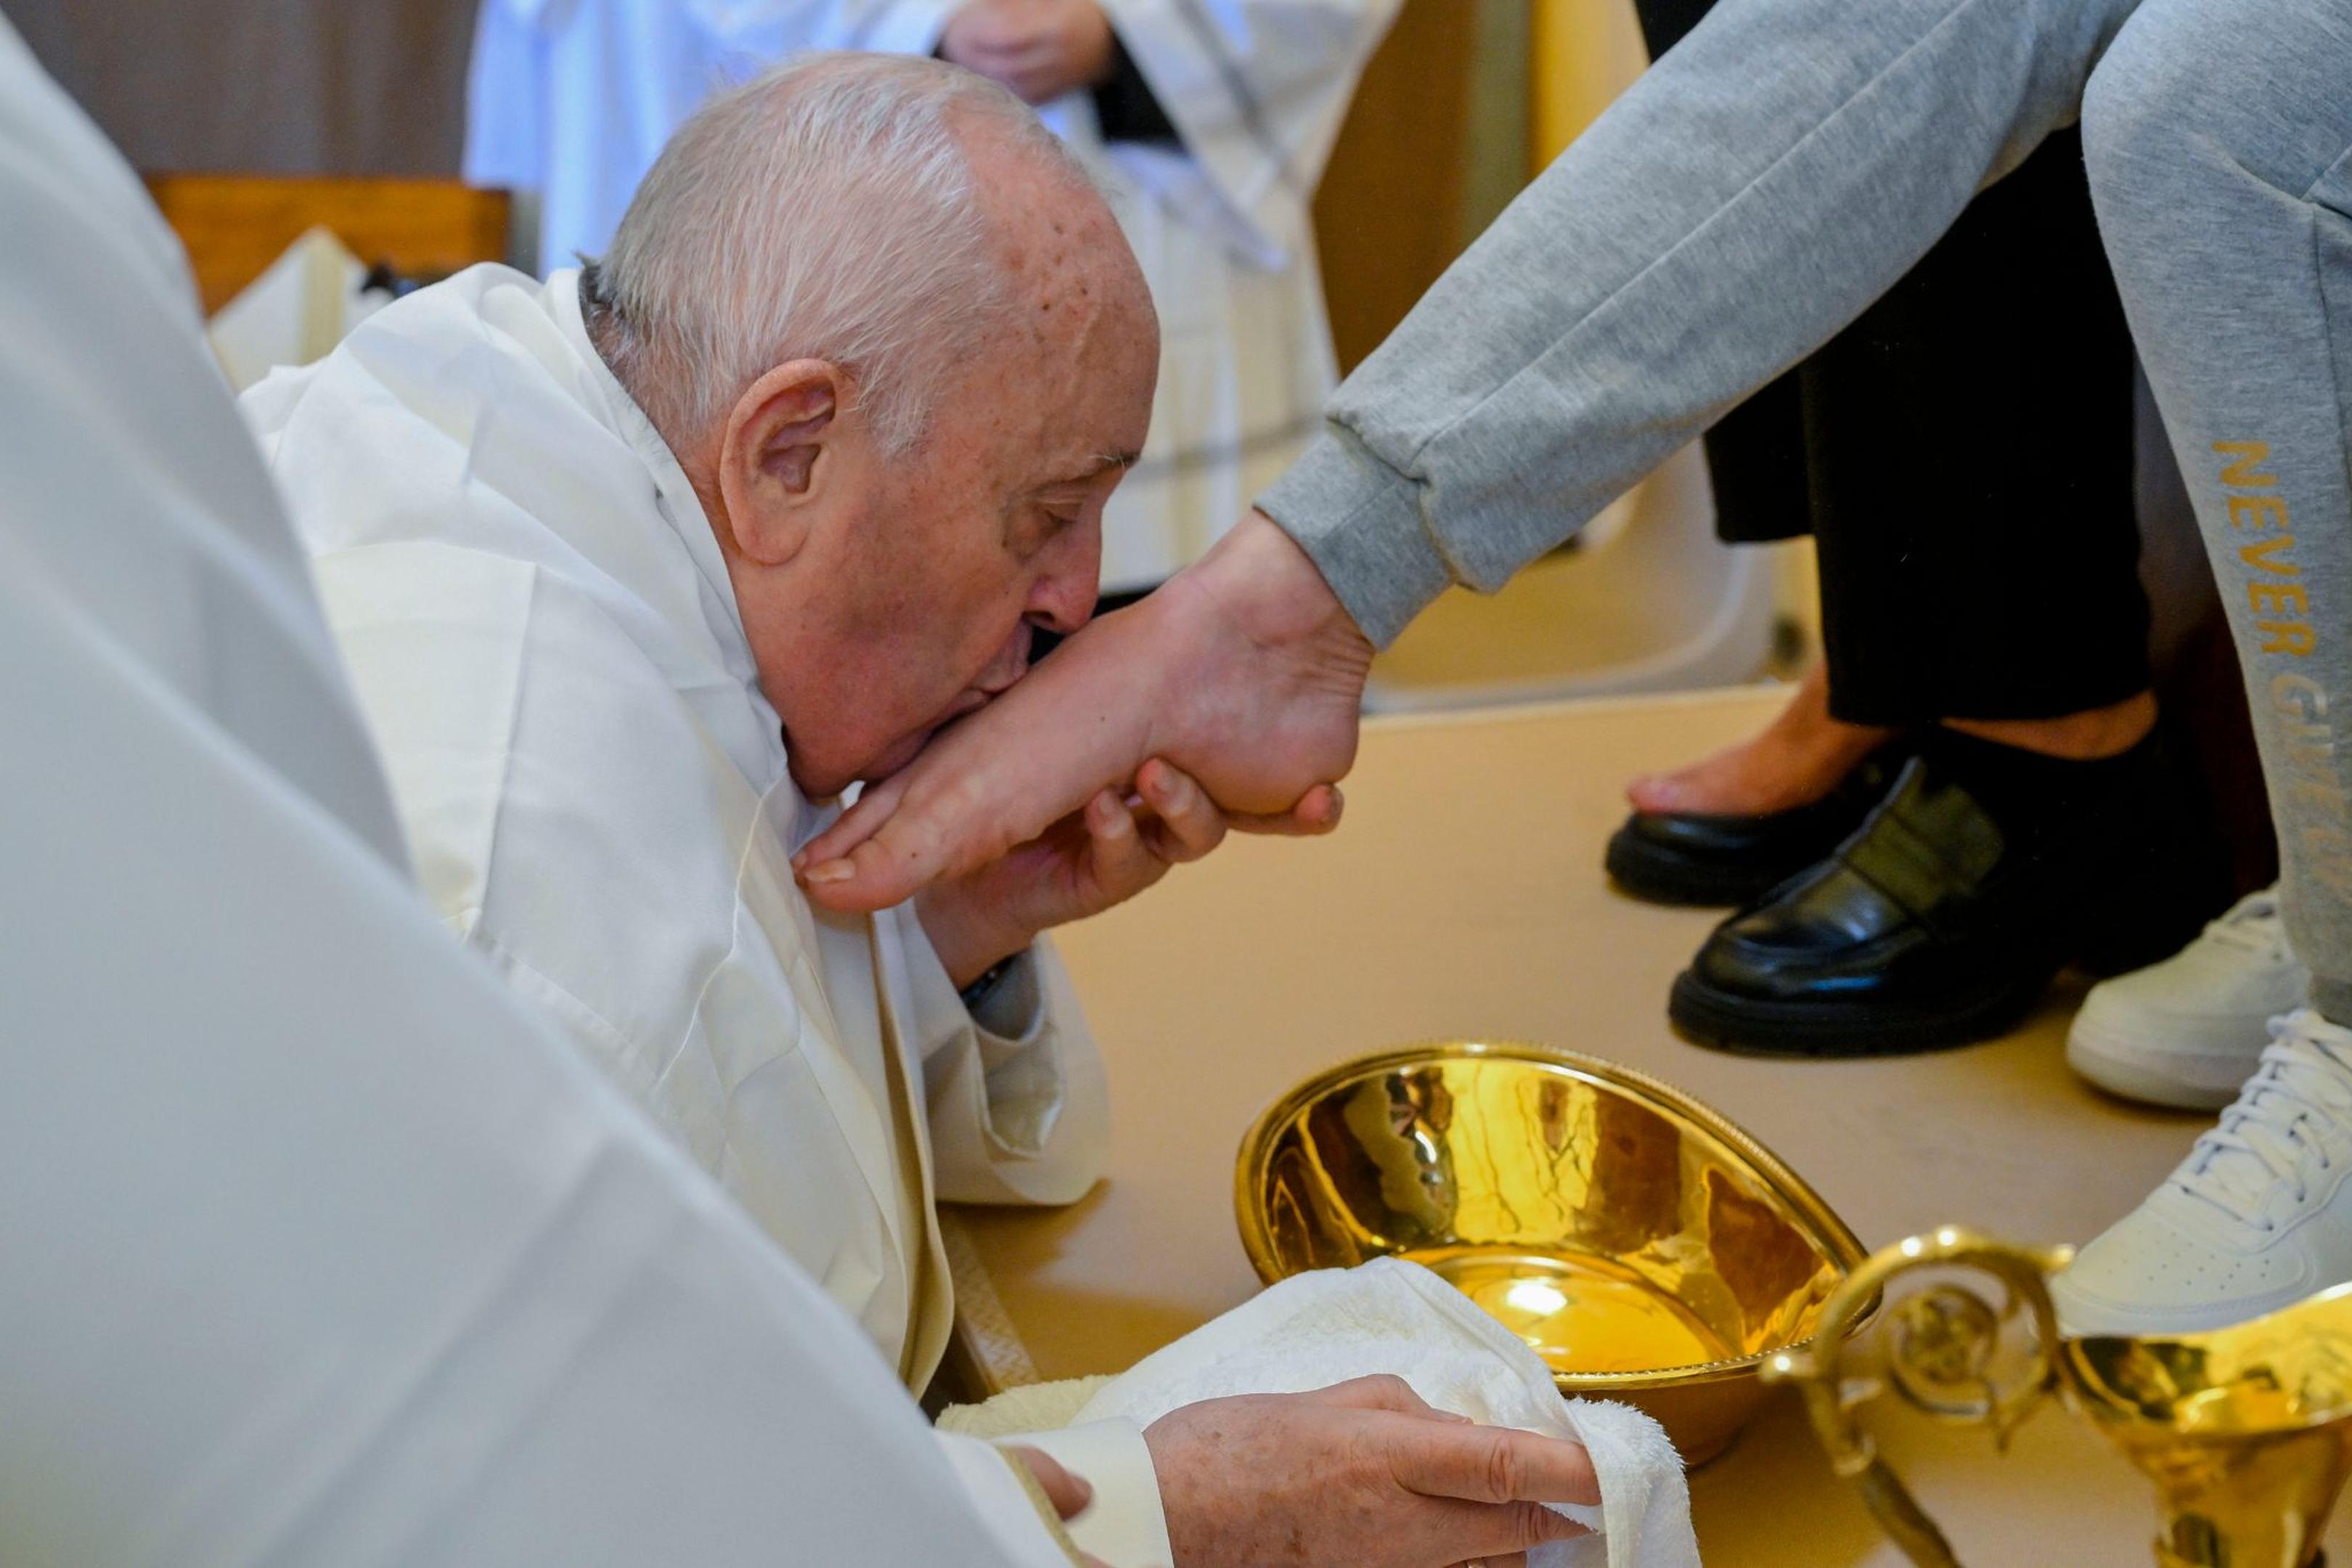 Papst Franziskus küsst den Fuß von einer weiblichen Insassin des Rebibbia-Gefängnisses.